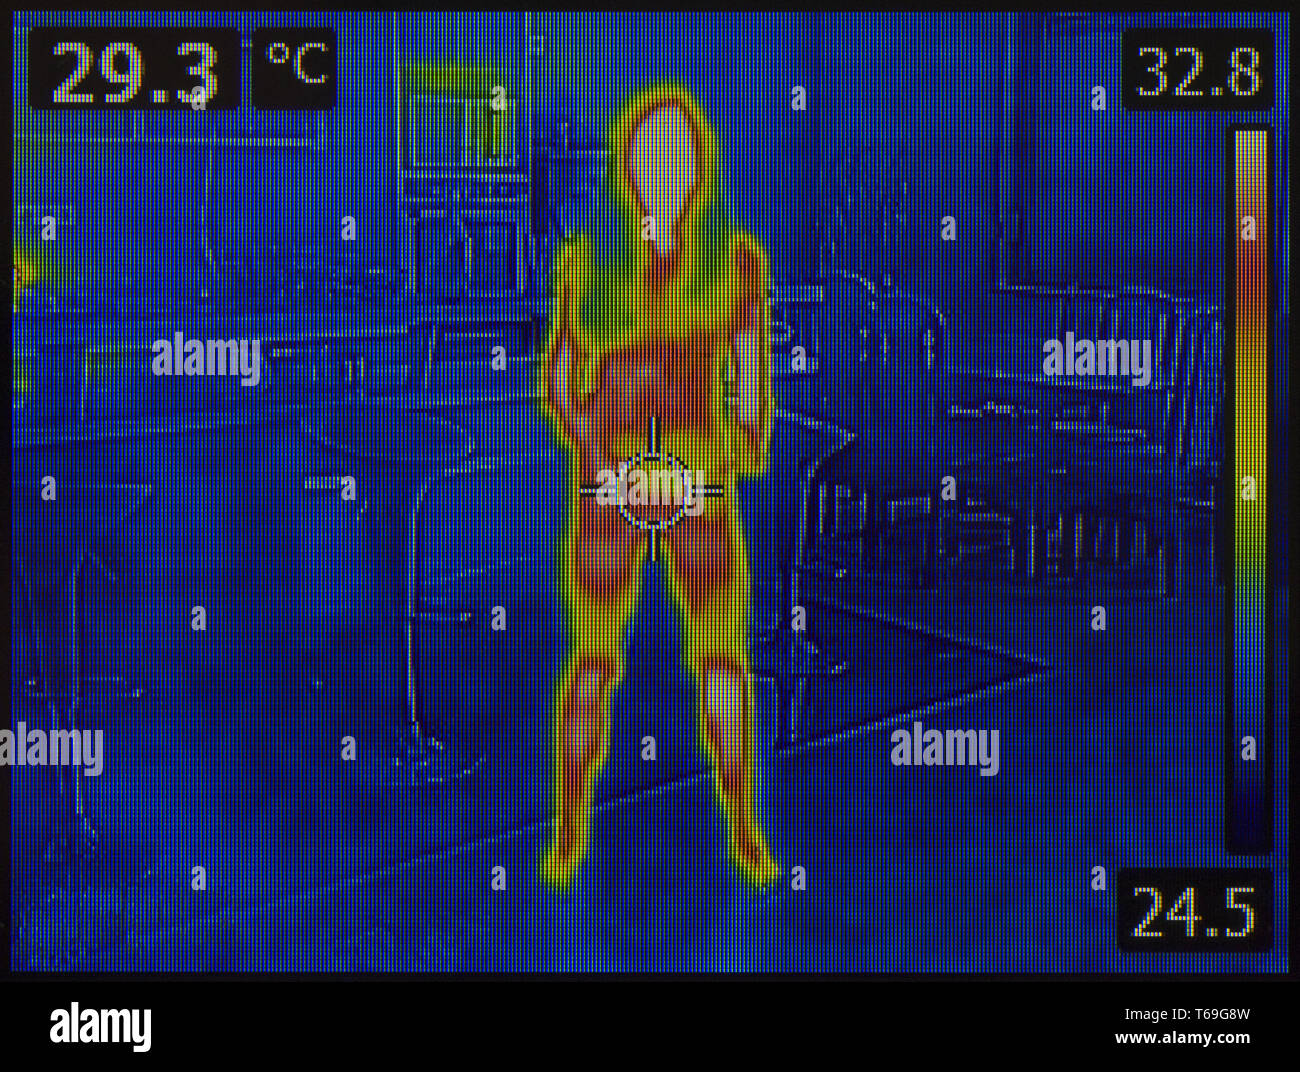 Menschliche Körper Wärmebild Stockfoto